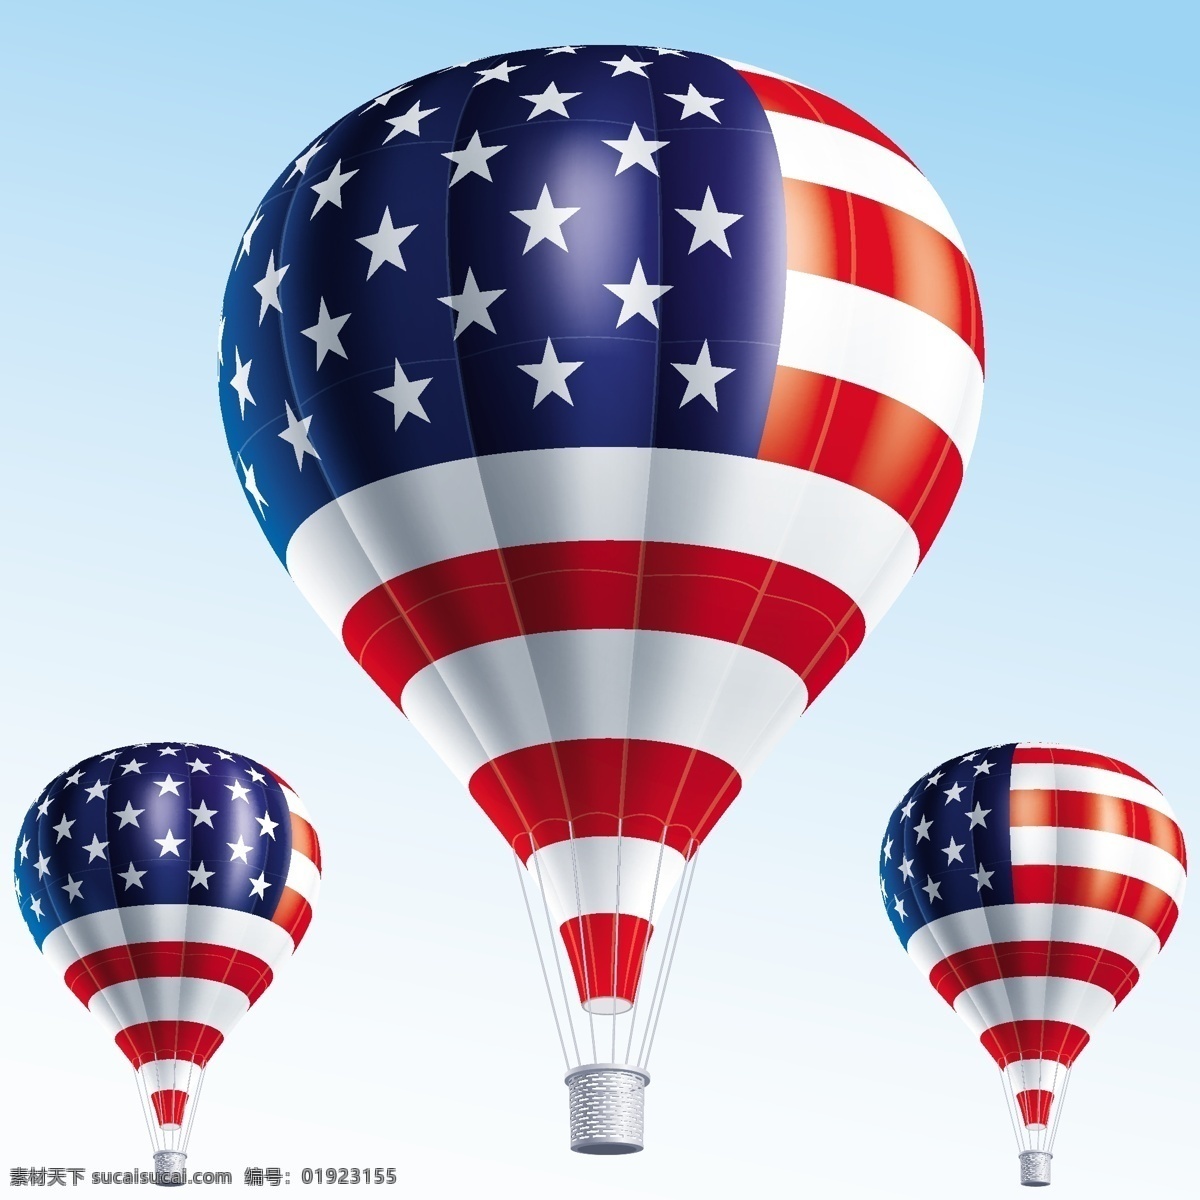 美国 国旗 热气球 蓝天 美国国旗 国旗图片 生活百科